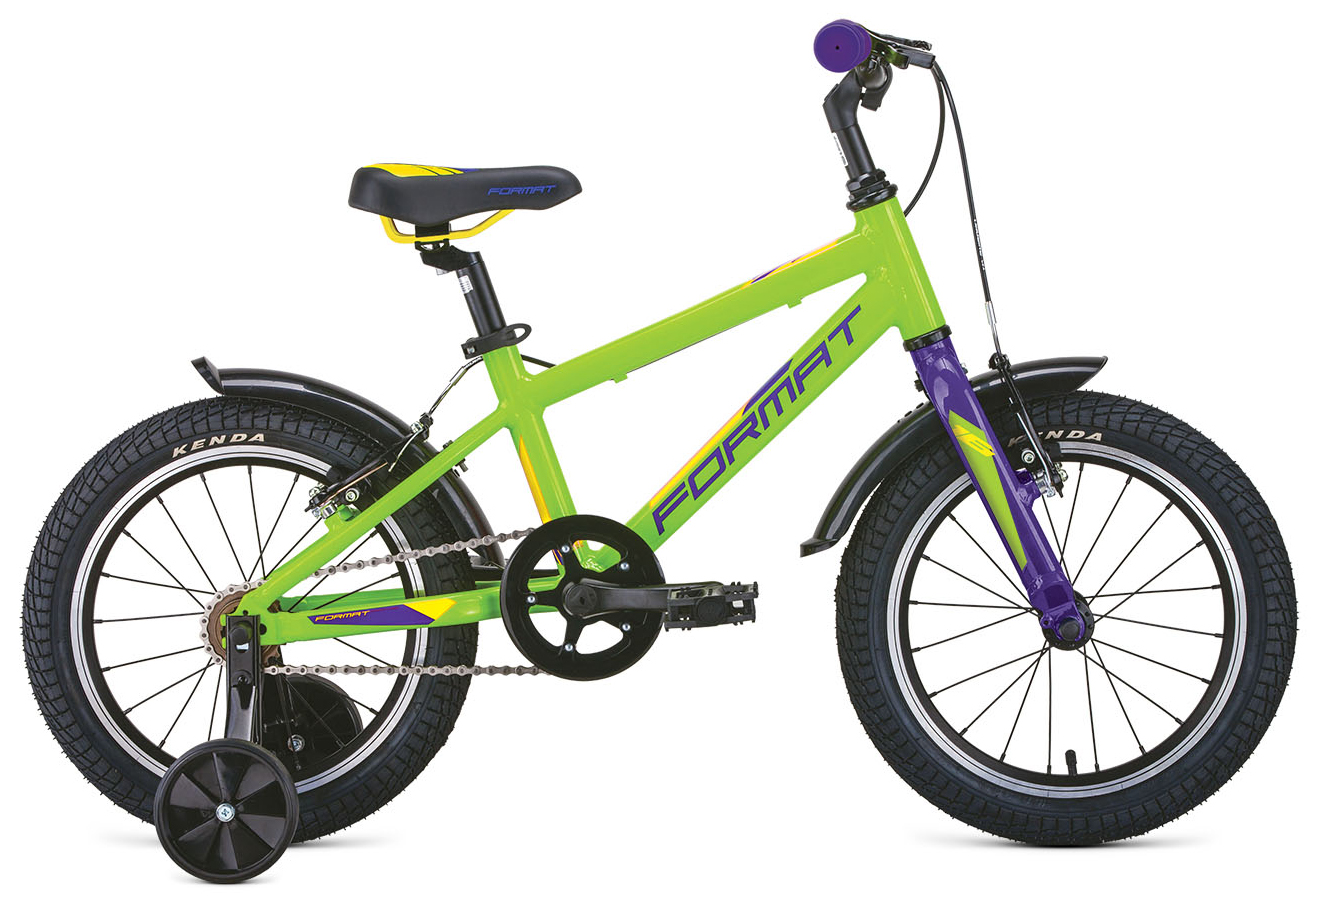  Отзывы о Детском велосипеде Format Kids 16 2021